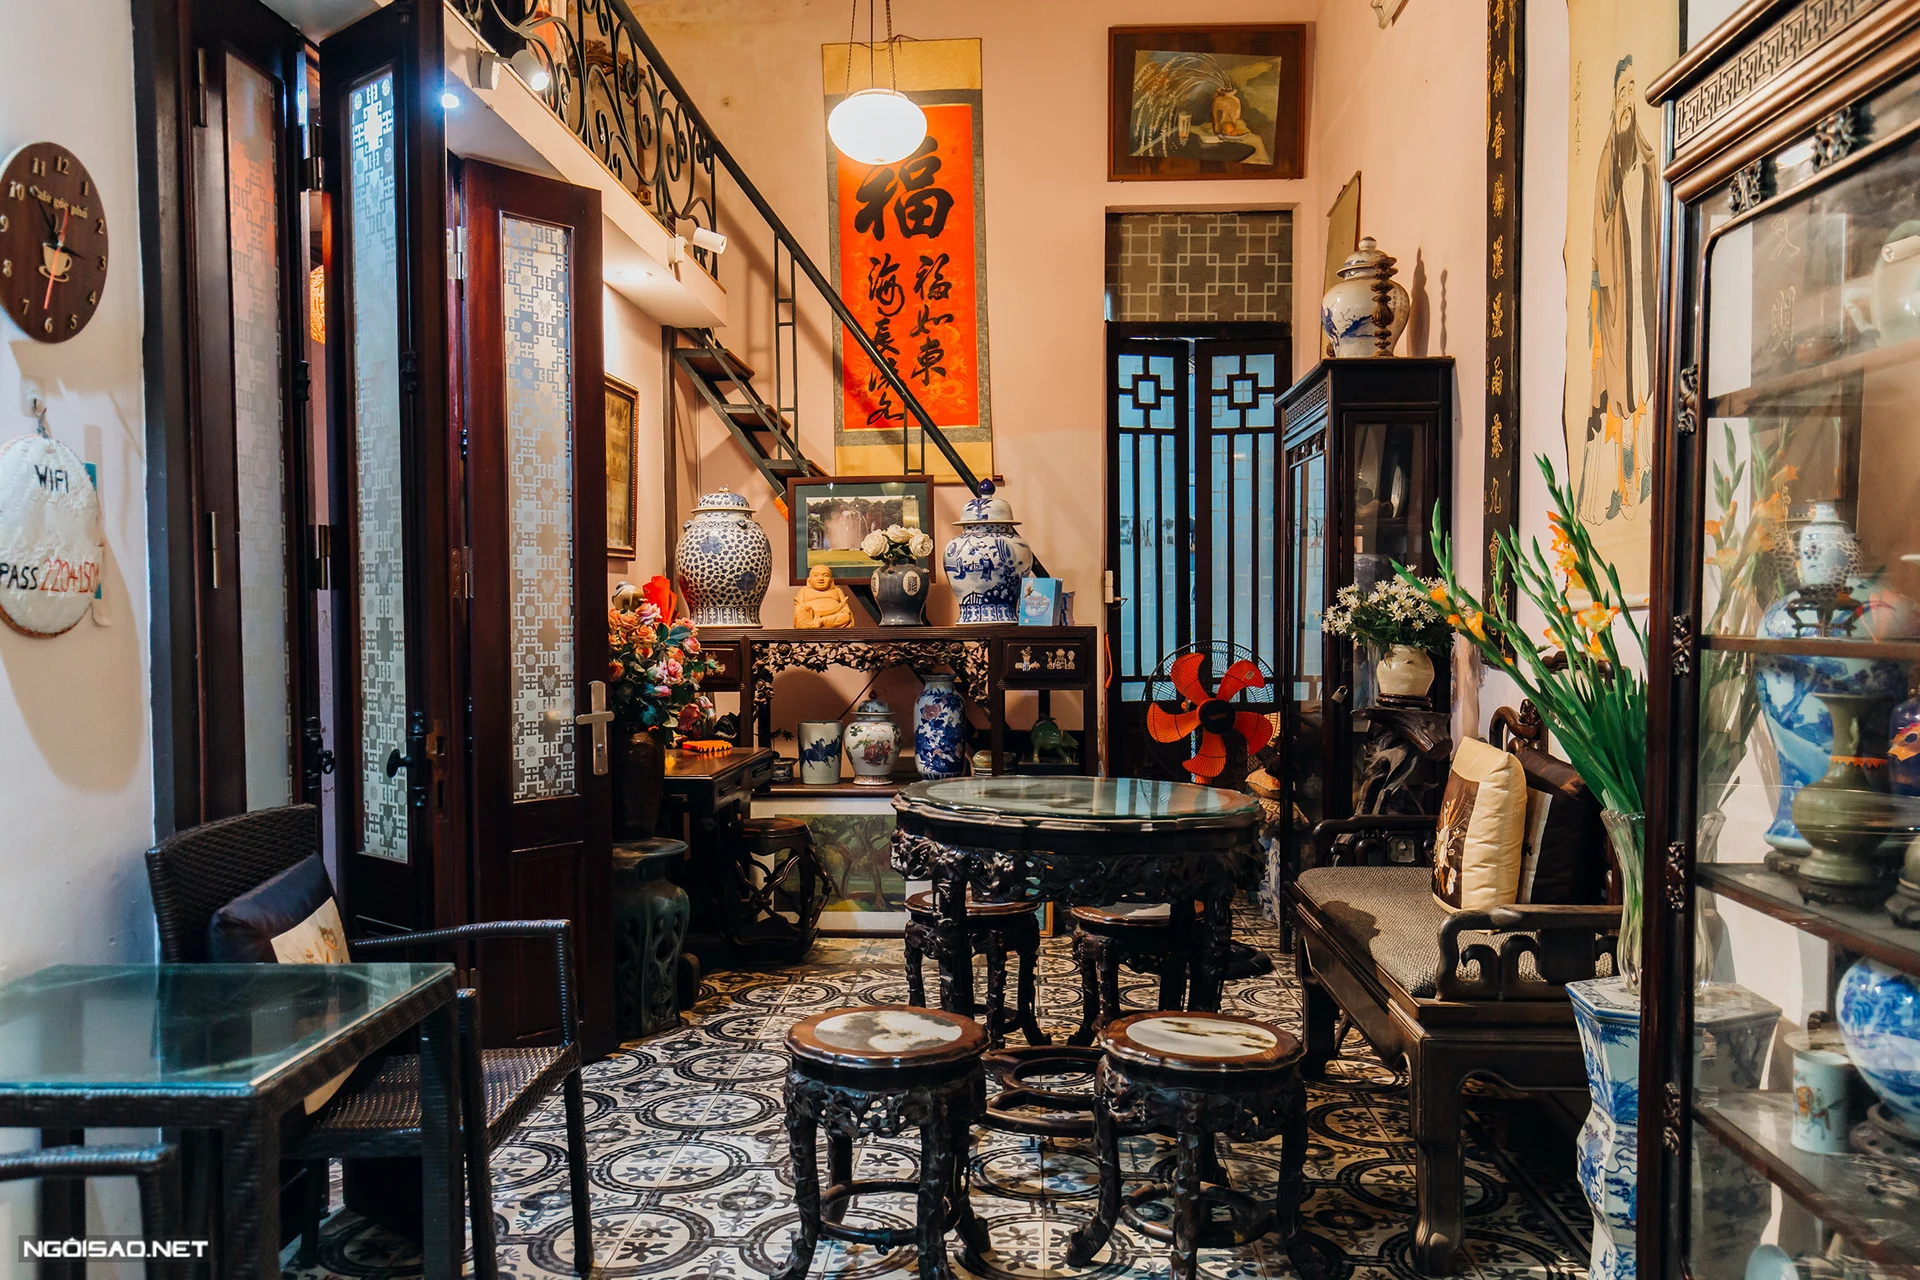 khám phá văn hóa, lịch sử hà nội trong quán cafe 100 năm tuổi